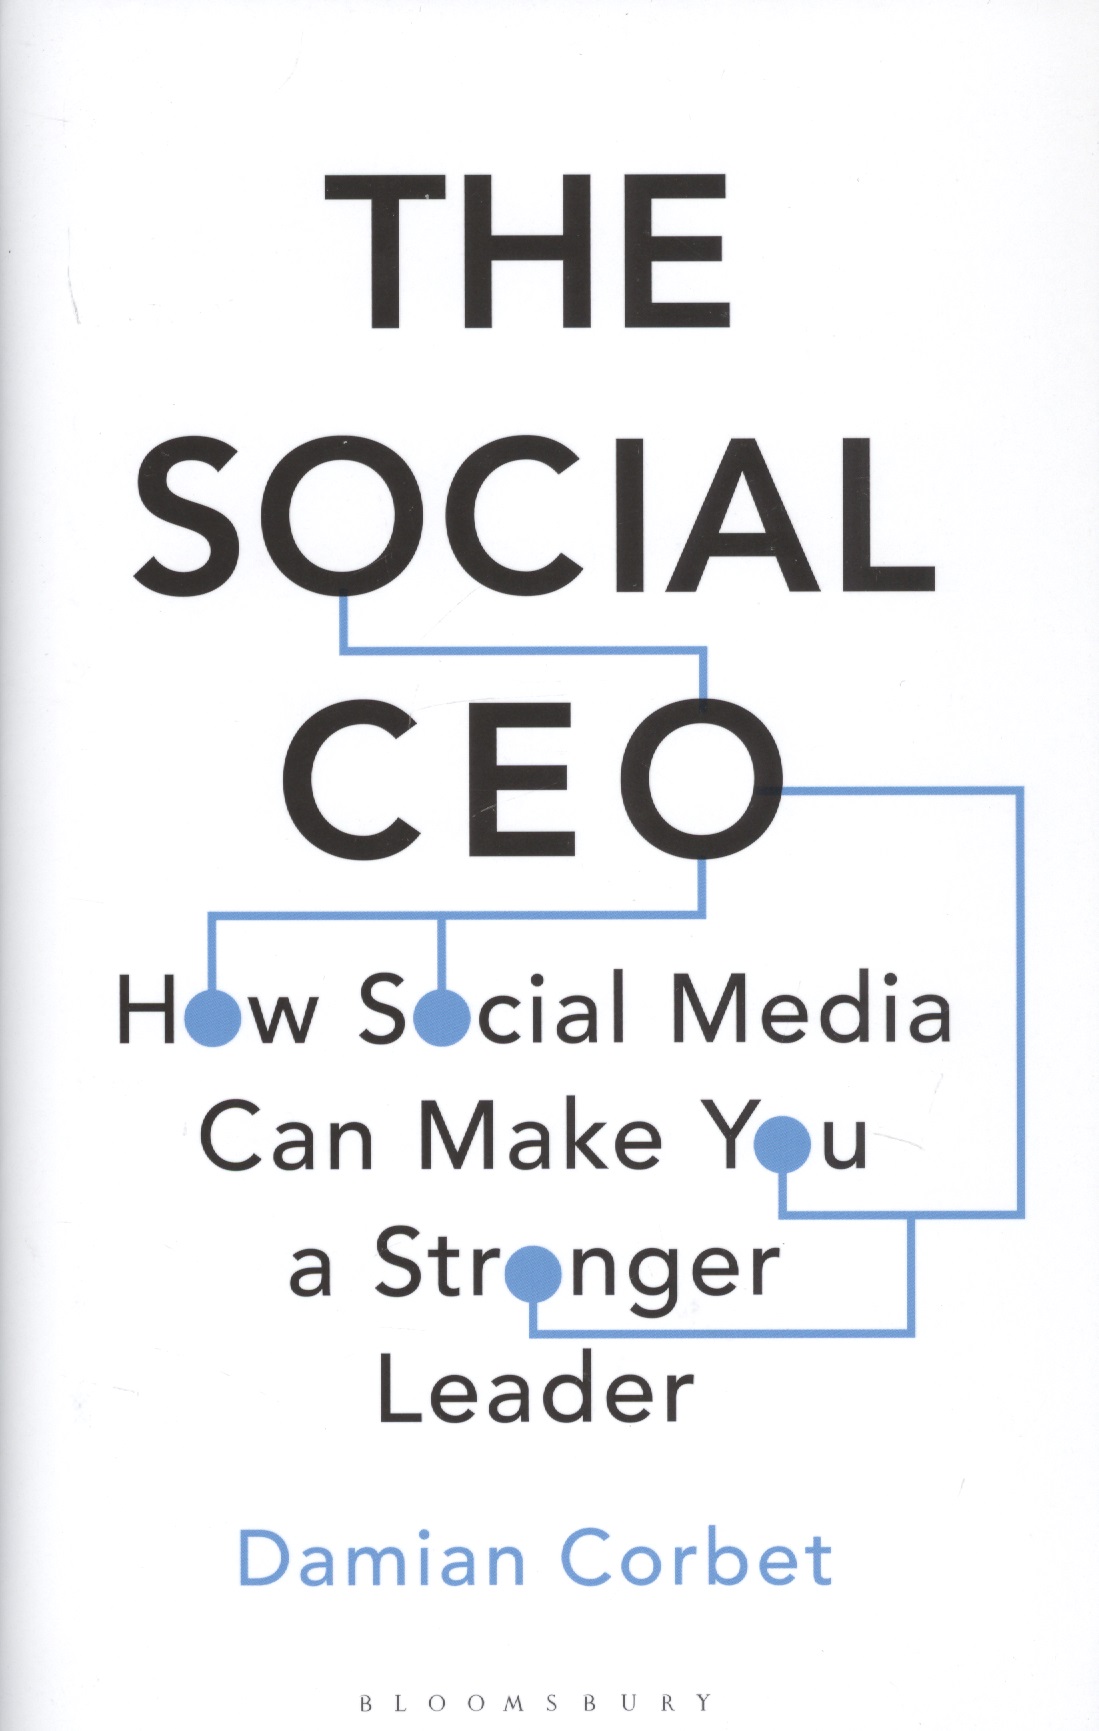 The Social CEO: How Social Media Can Make You A Stronger Leader corbet damian the social ceo how social media can make you a stronger leader